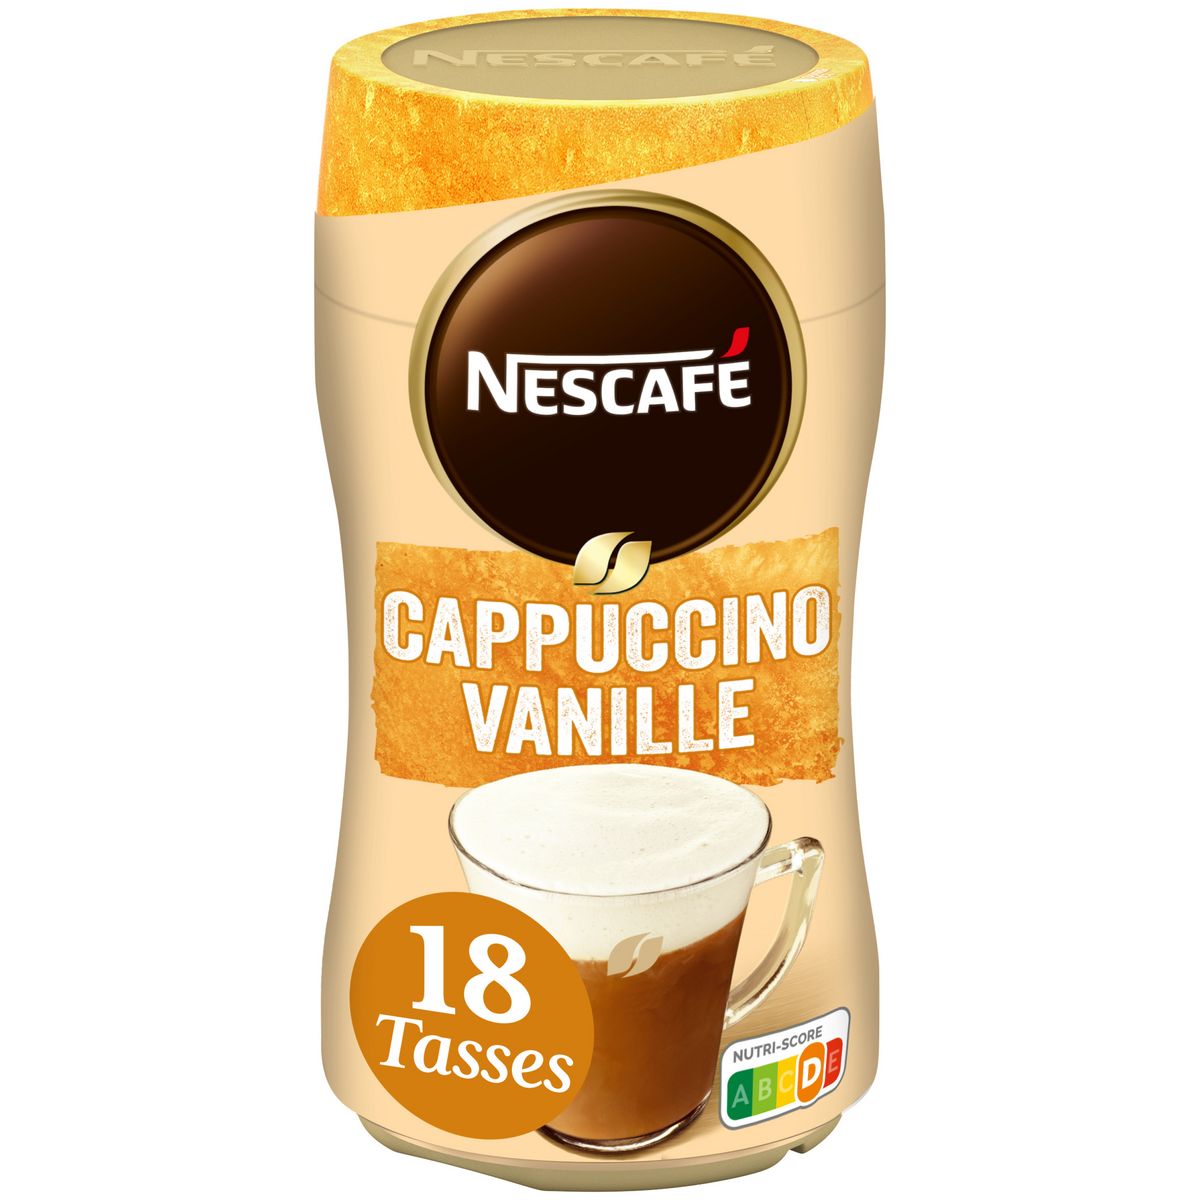 NESCAFE Café soluble cappuccino vanille 18 tasses 310g